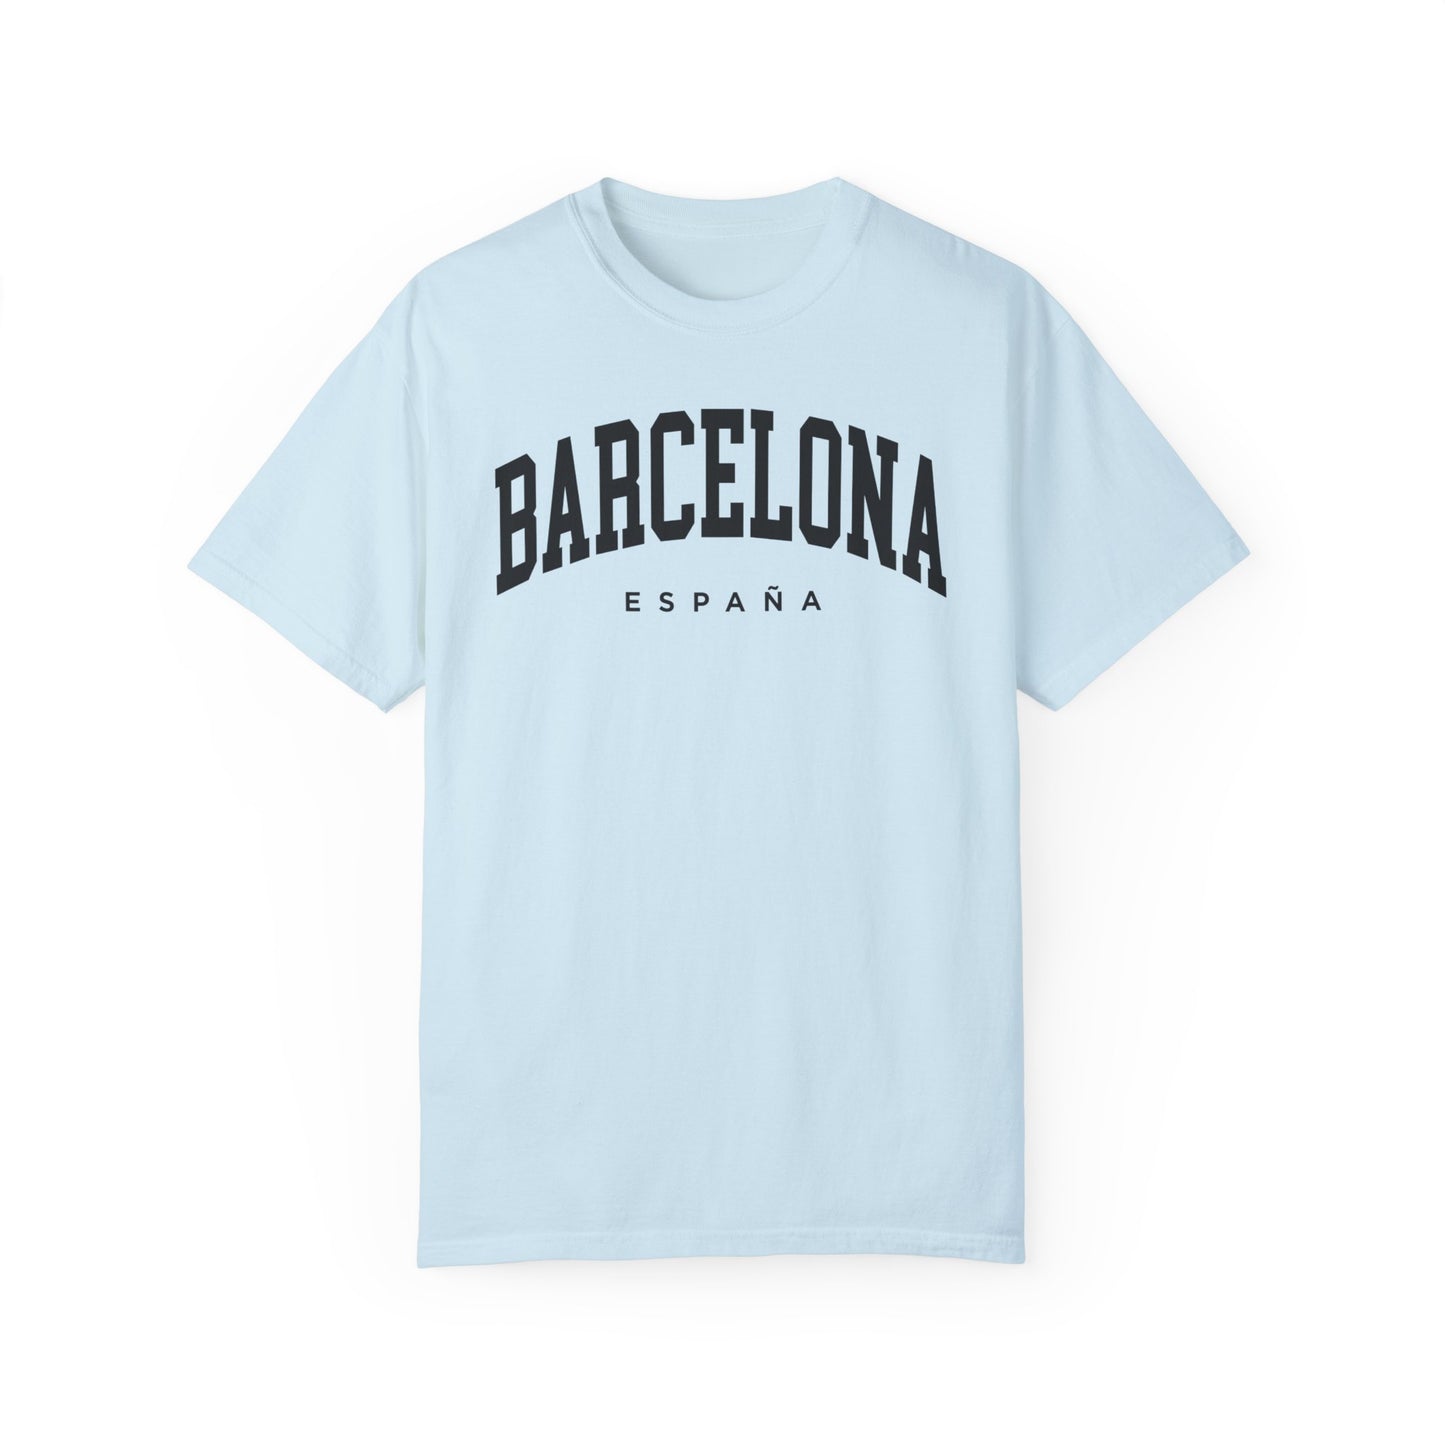 Barcelona Spain Comfort Colors® Tee